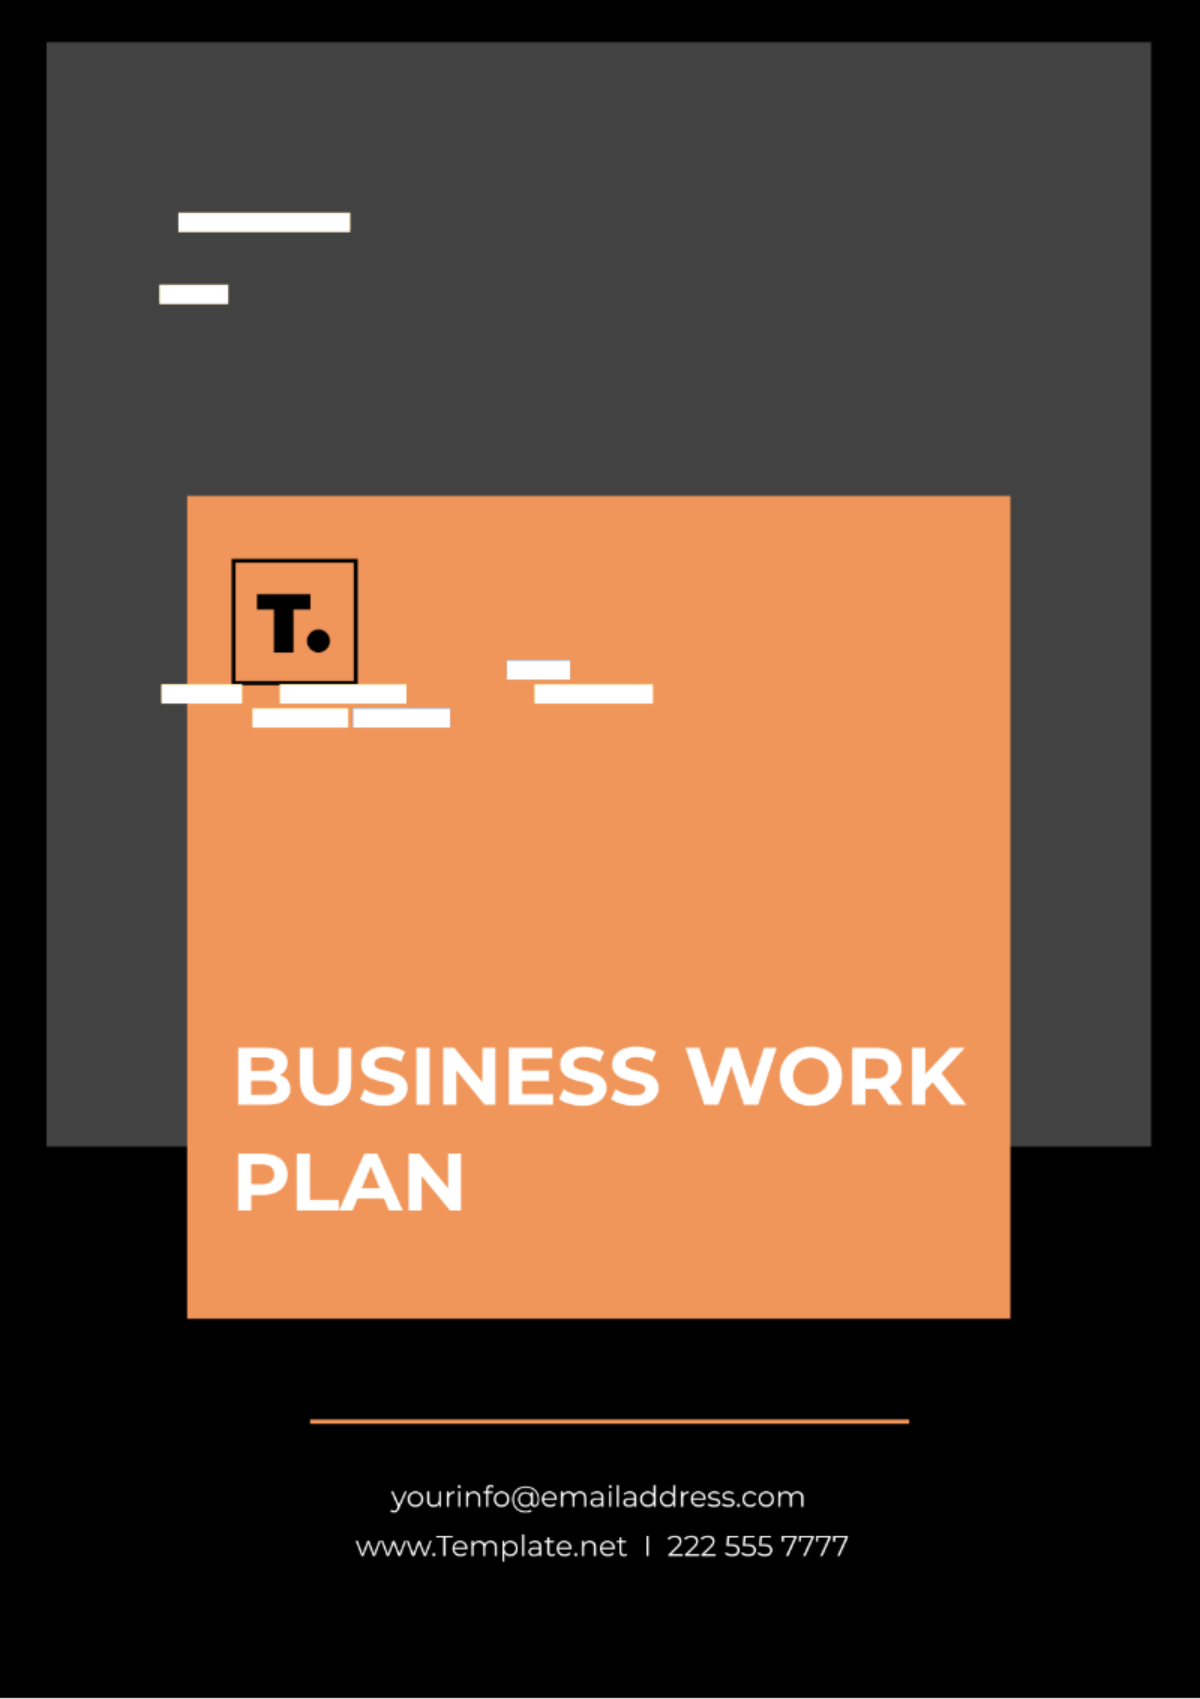 Business Work Plan Template